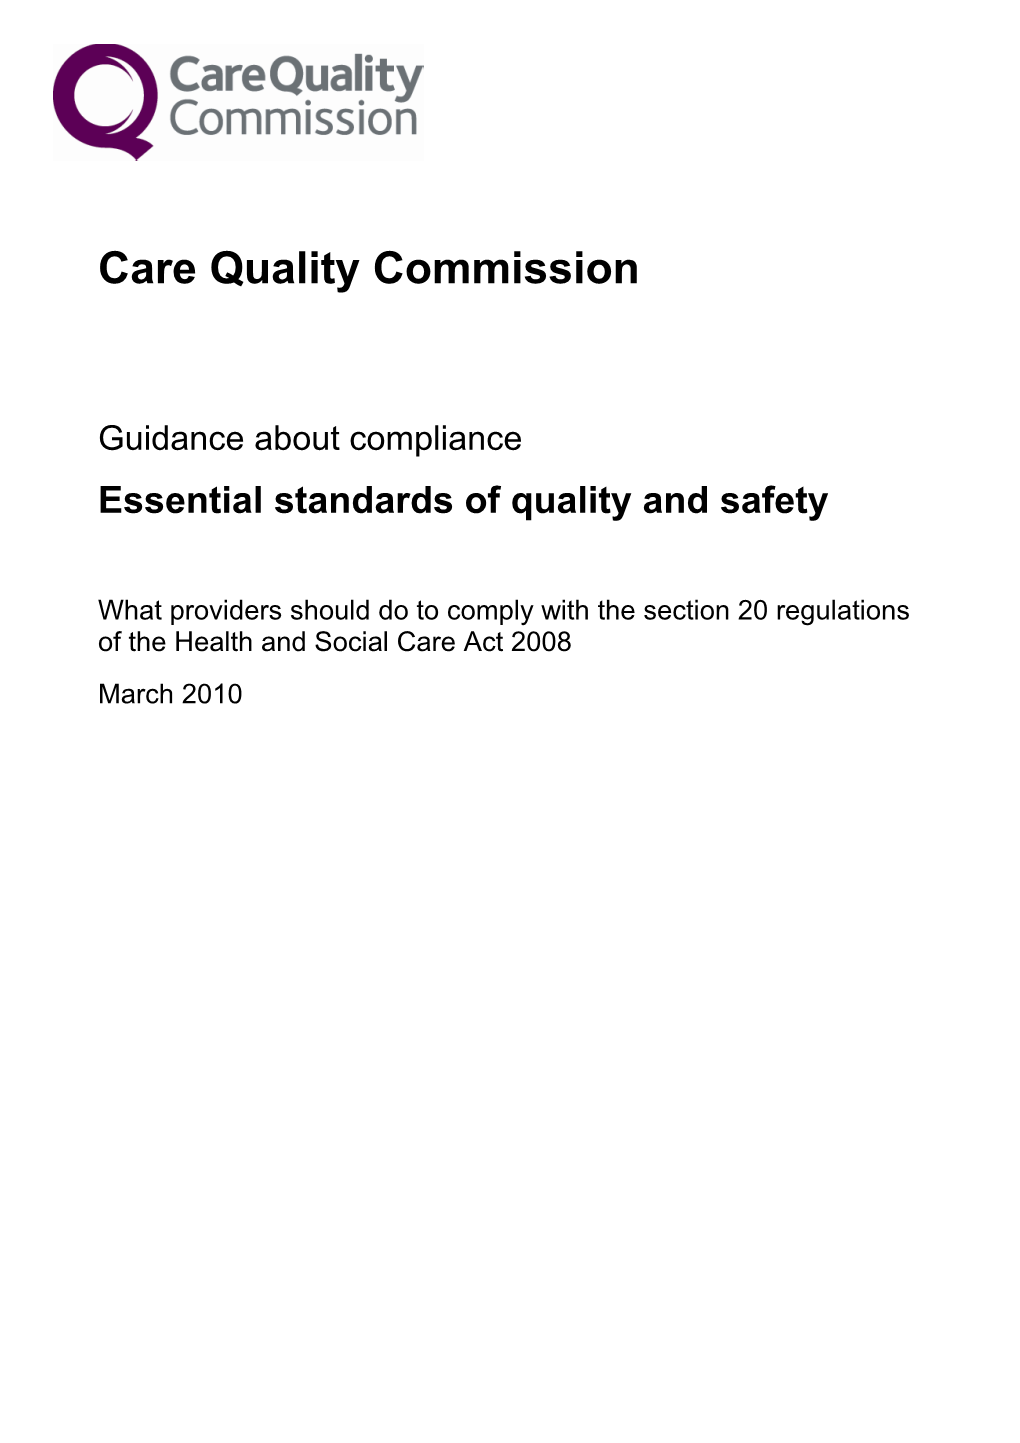 Guidance About Compliance: Judgement Framework March 2010